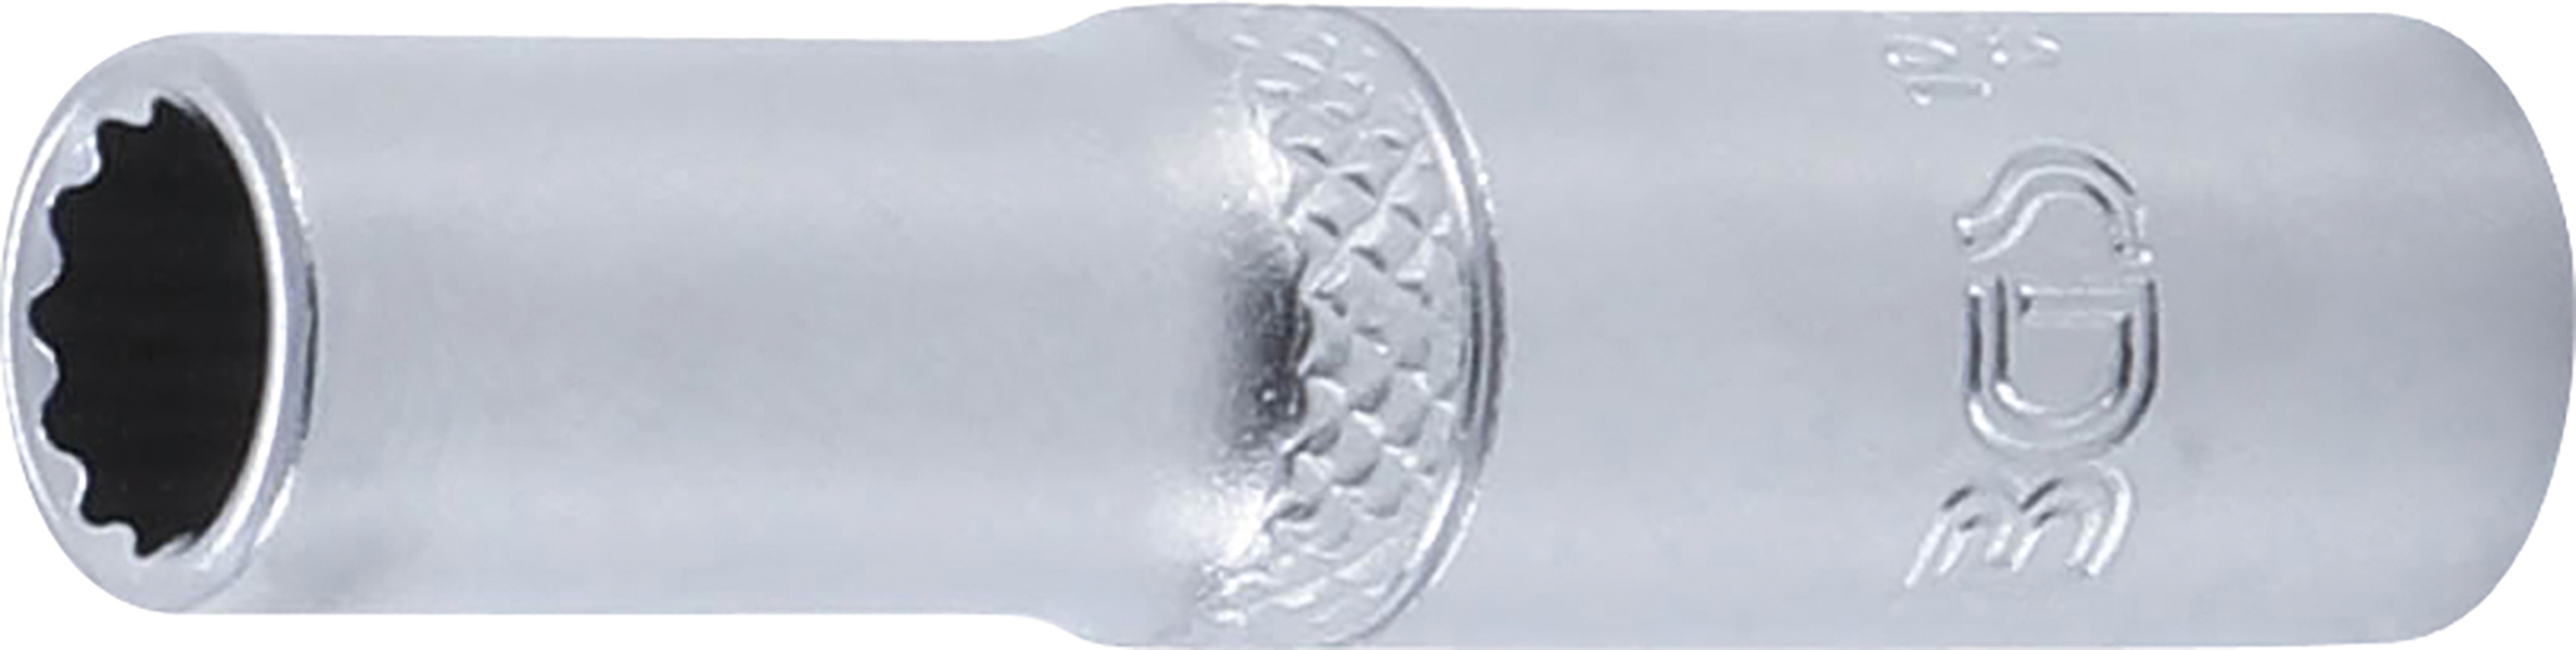 BGS 10707 Cheie tubulară 7 mm in 12 colțuri, lungă cu antrenare 6,3 mm (1/4")mm